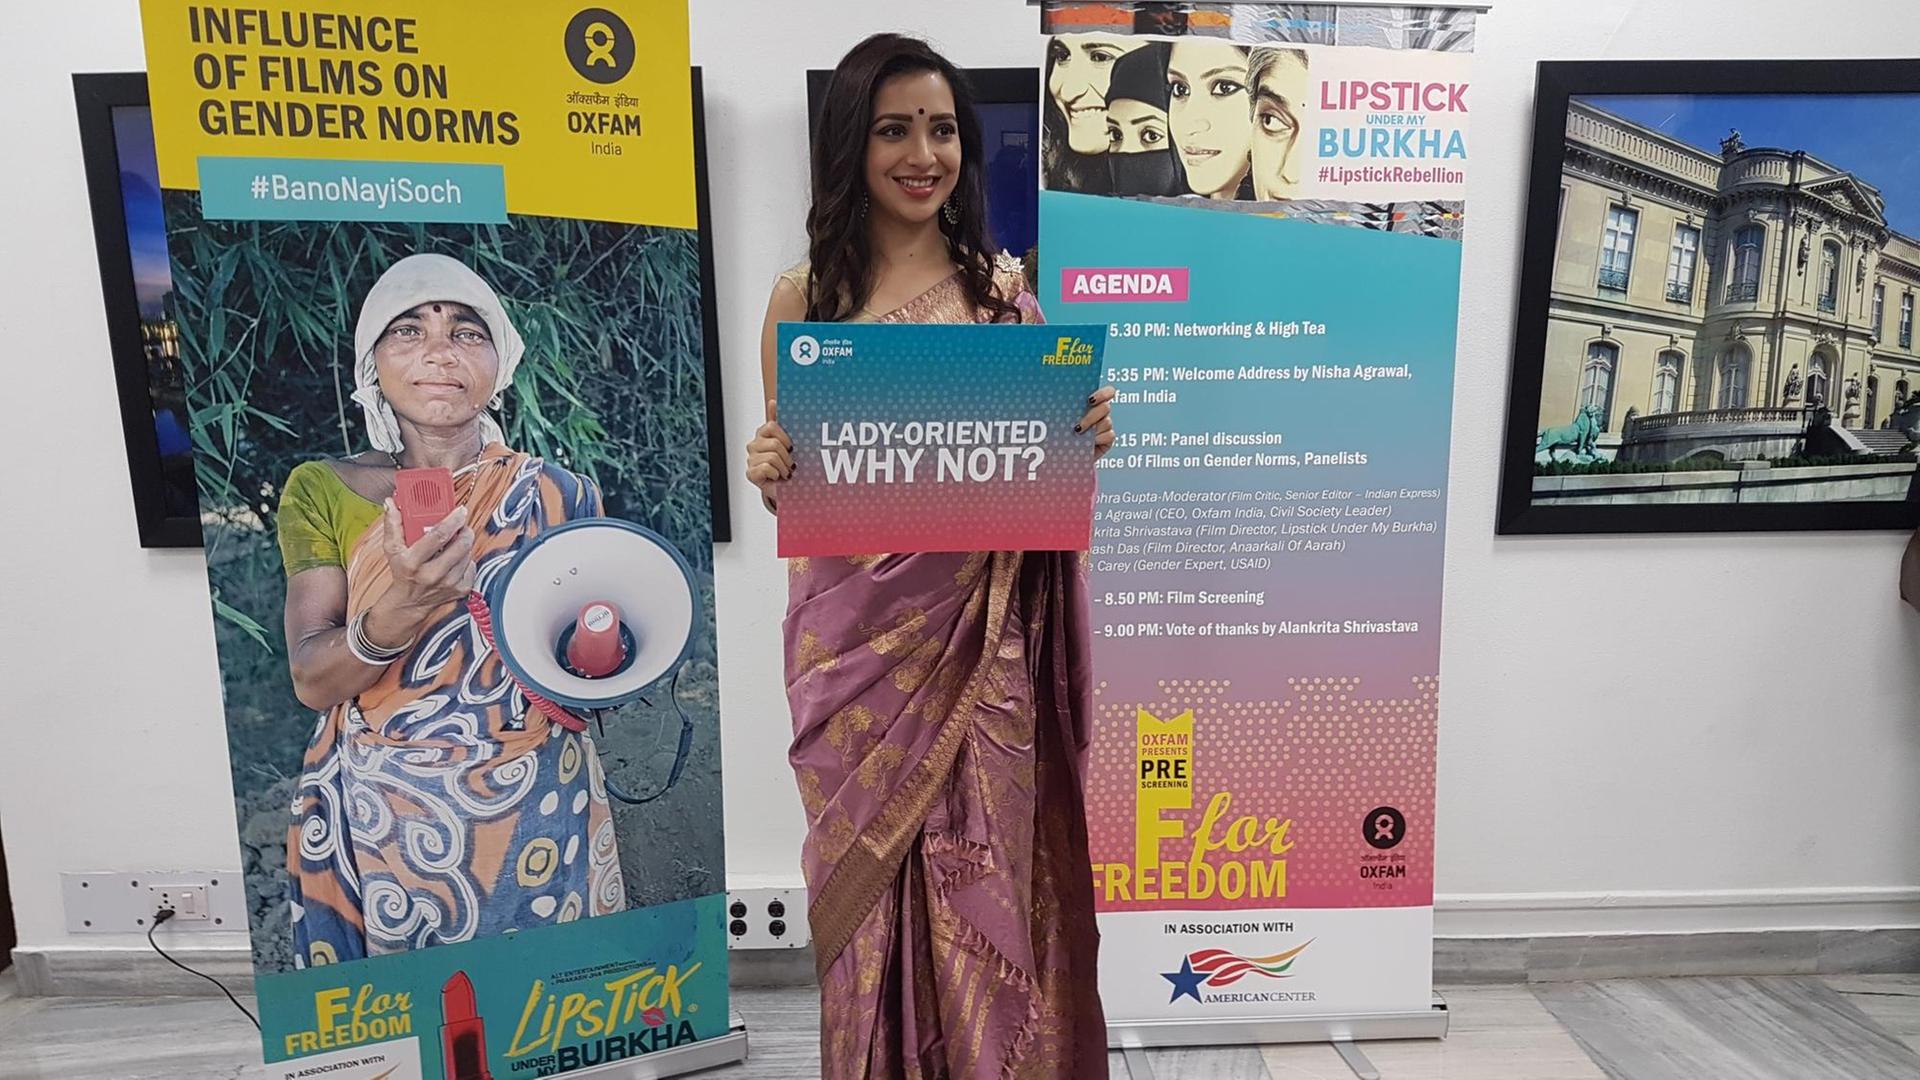 Die indische Schauspielerin Plabita Borthakur posiert in Neu Delhi (Indien) bei einer Veranstaltung zum Kinostart ihres Films "Lipstick Under My Burkha".